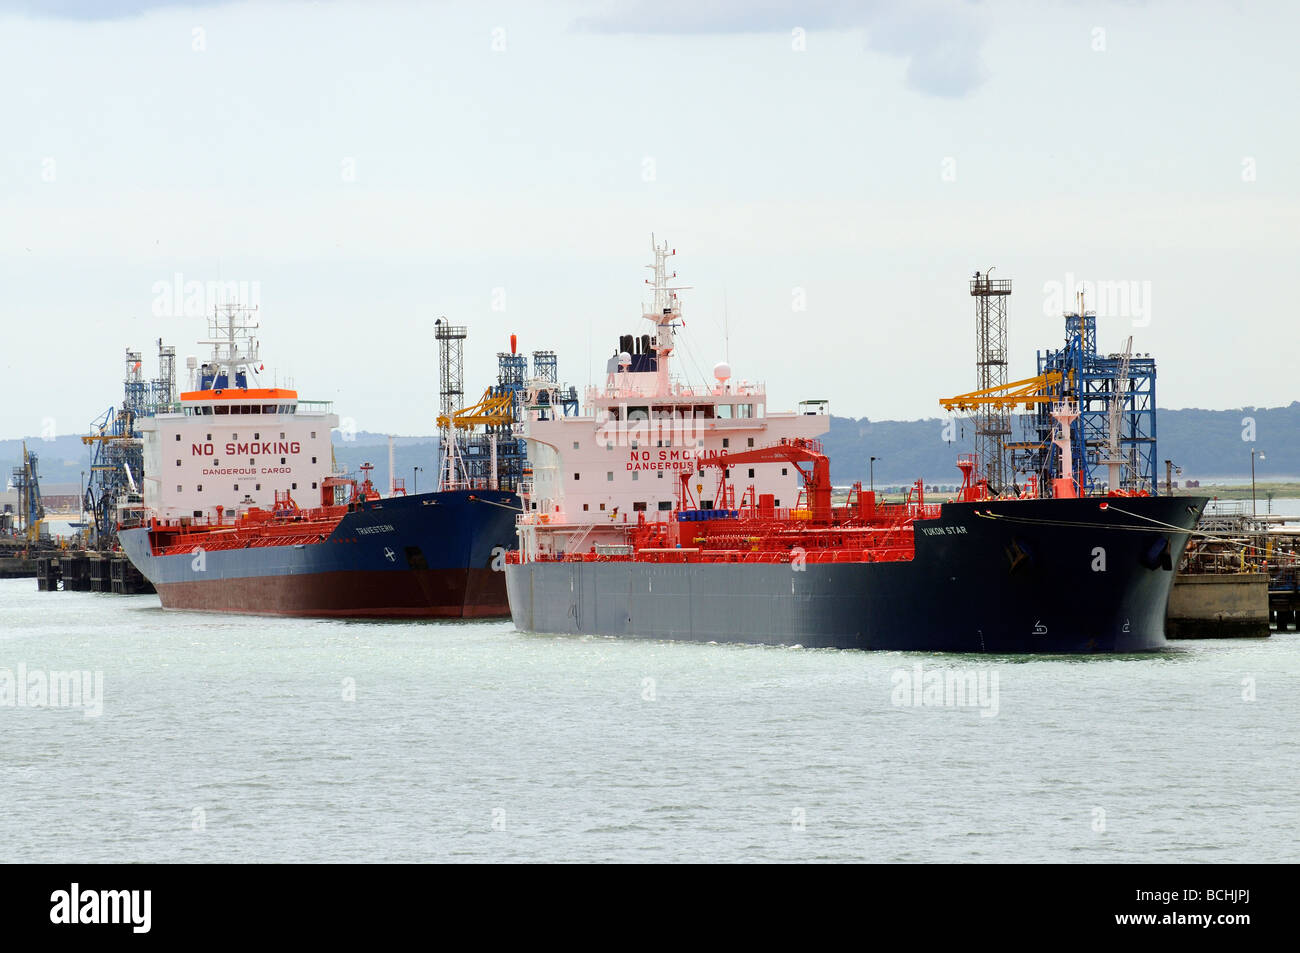 Terminal maritime de Southampton UK Fawley pétroliers de brut aux côtés de la star du Yukon et le Travestern Banque D'Images